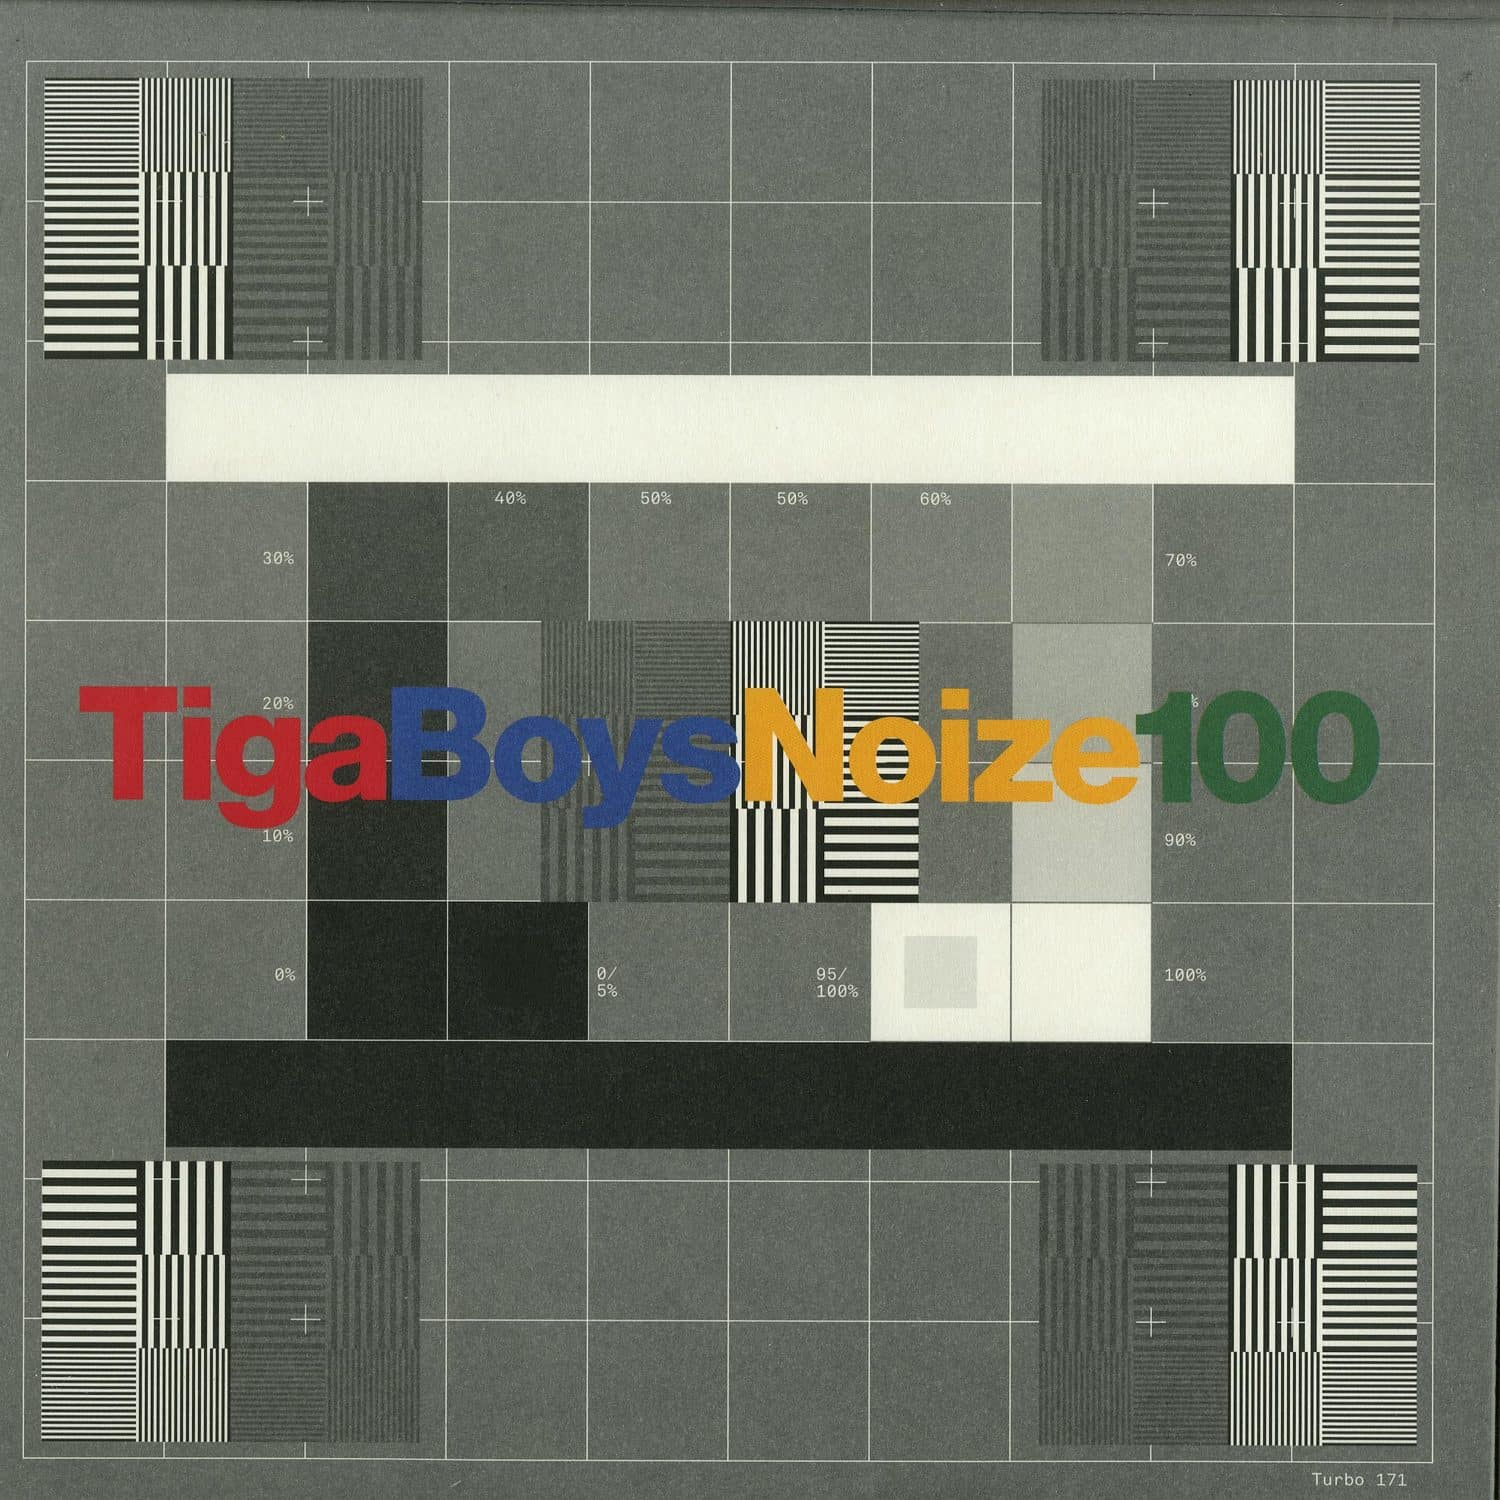 Tiga vs Boys Noize - 100